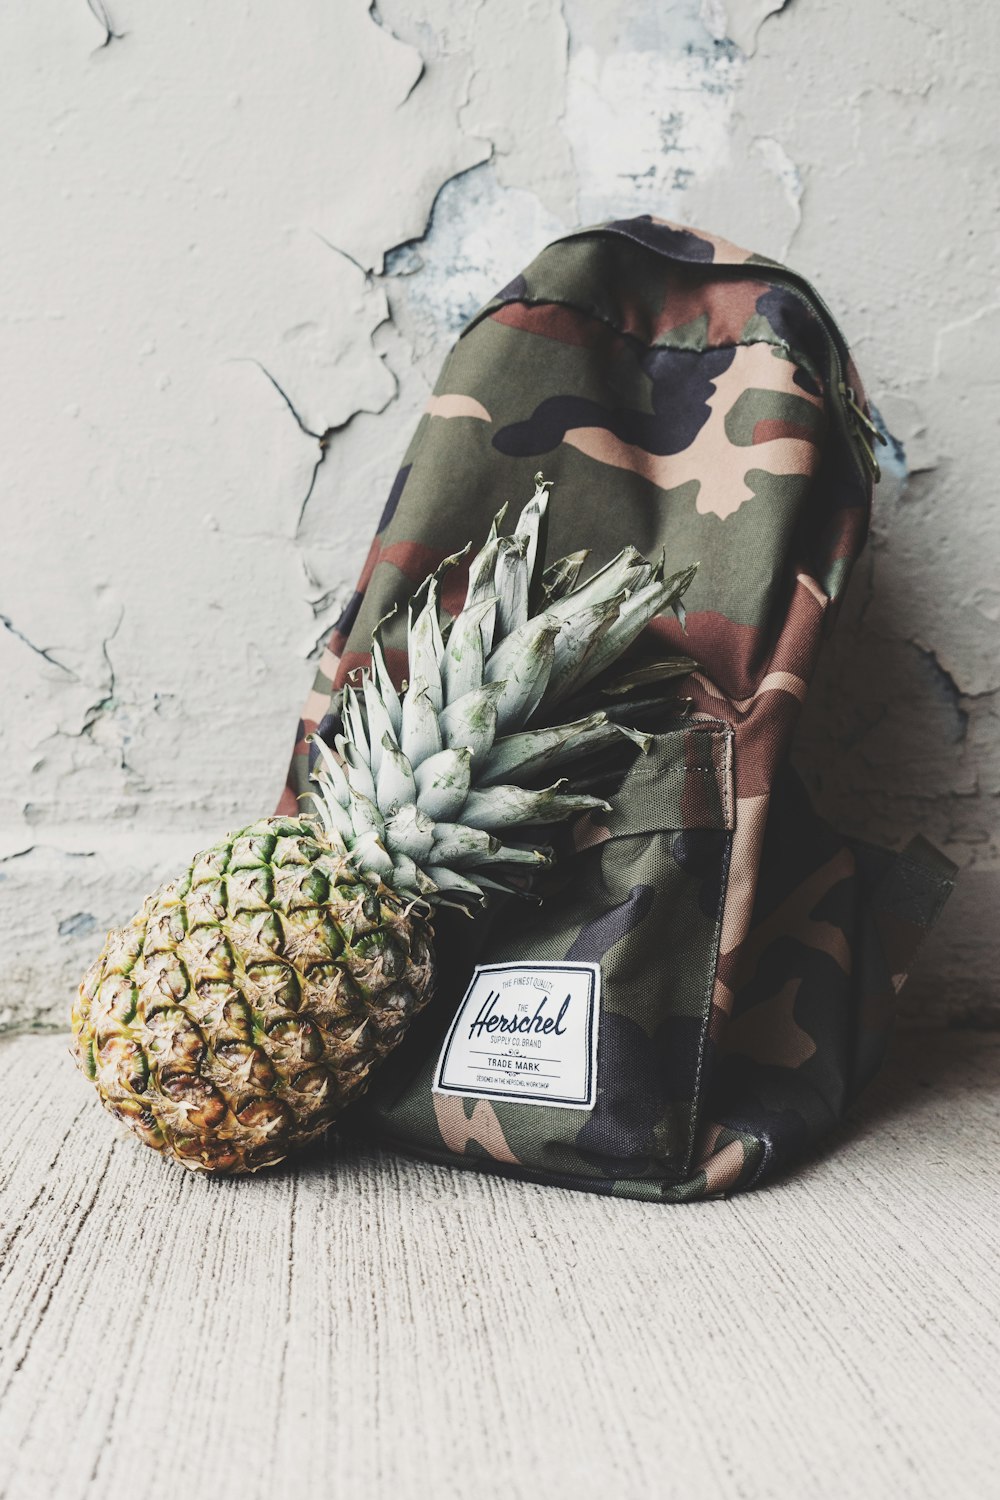 Ananasfrucht lehnt sich an Camouflage-Rucksack